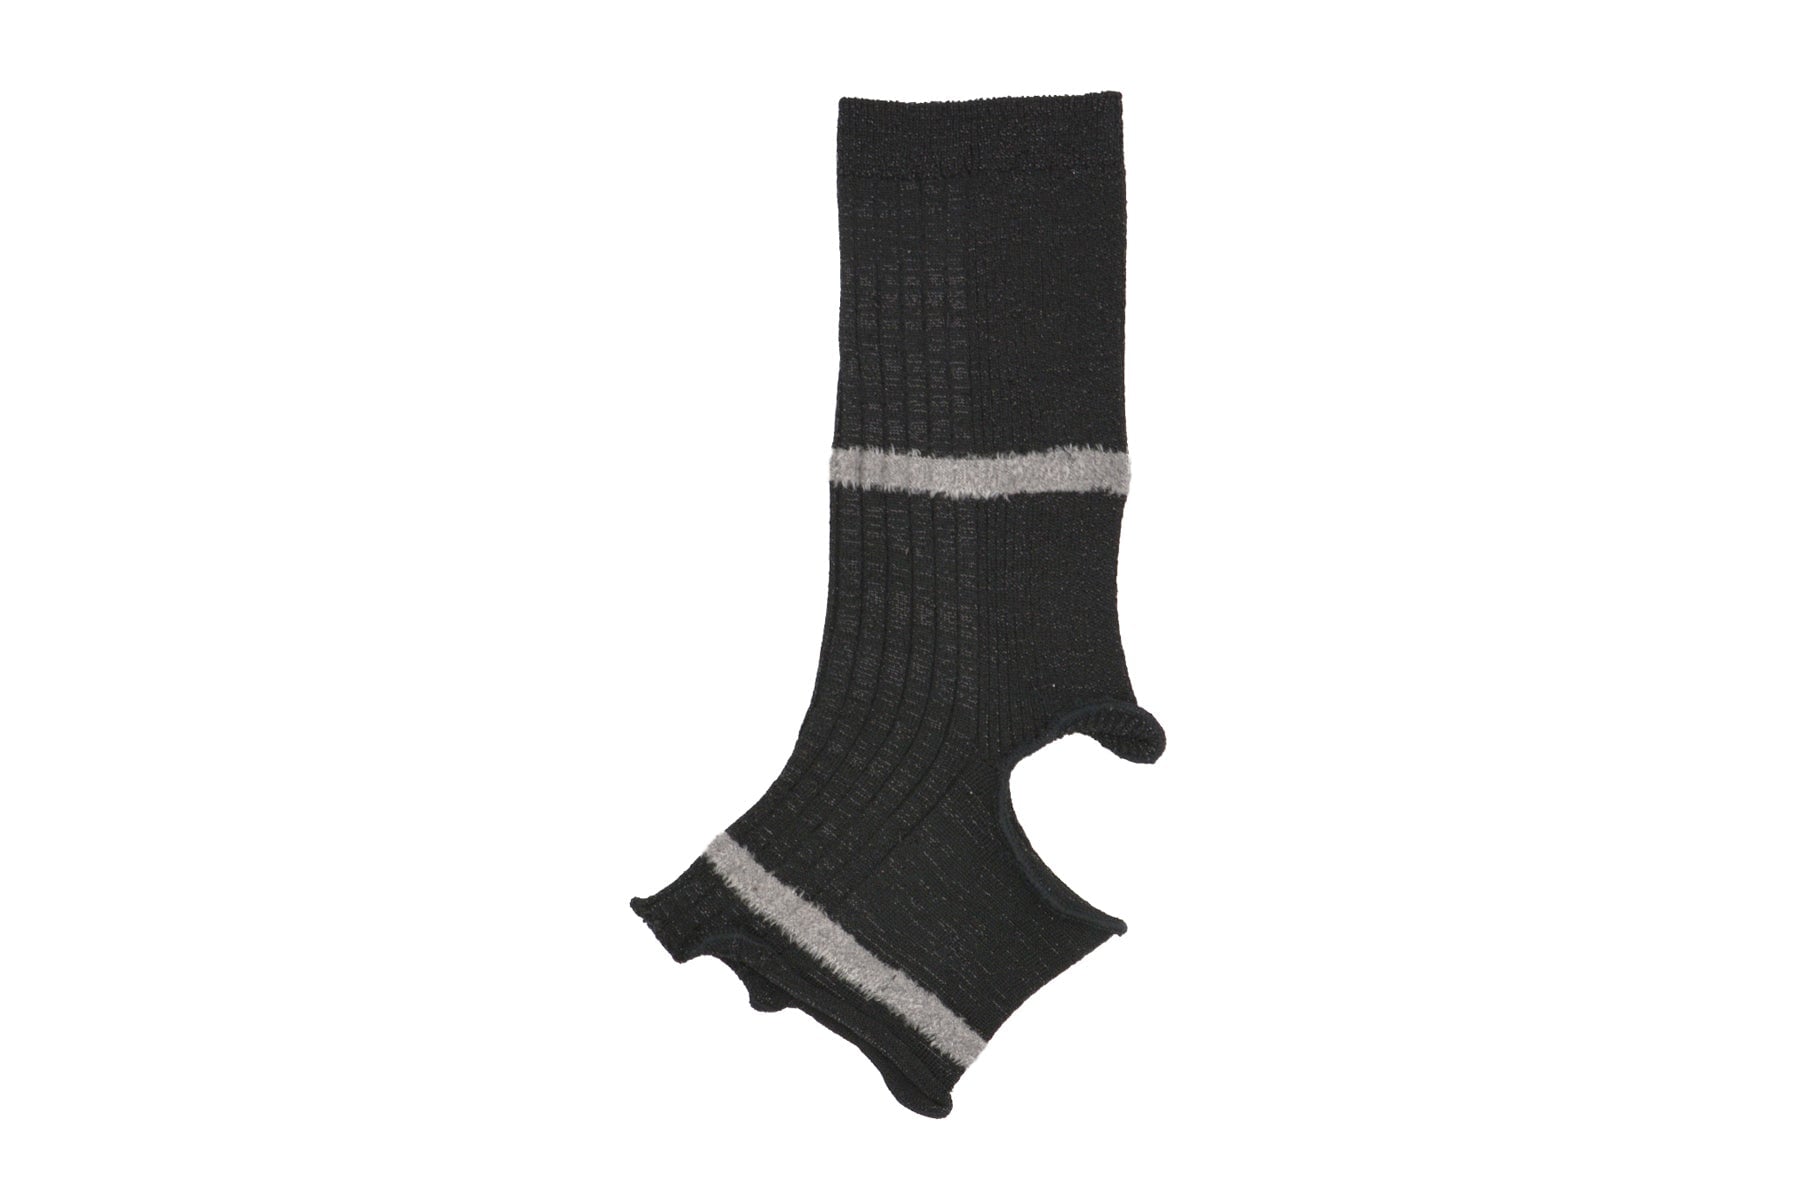 Damen Socken aus Viskose in Schwarz mit Glitzerfaden - Ohne Zehen-Fersen-Absatz - Ella Damen Socken Alto Milano 